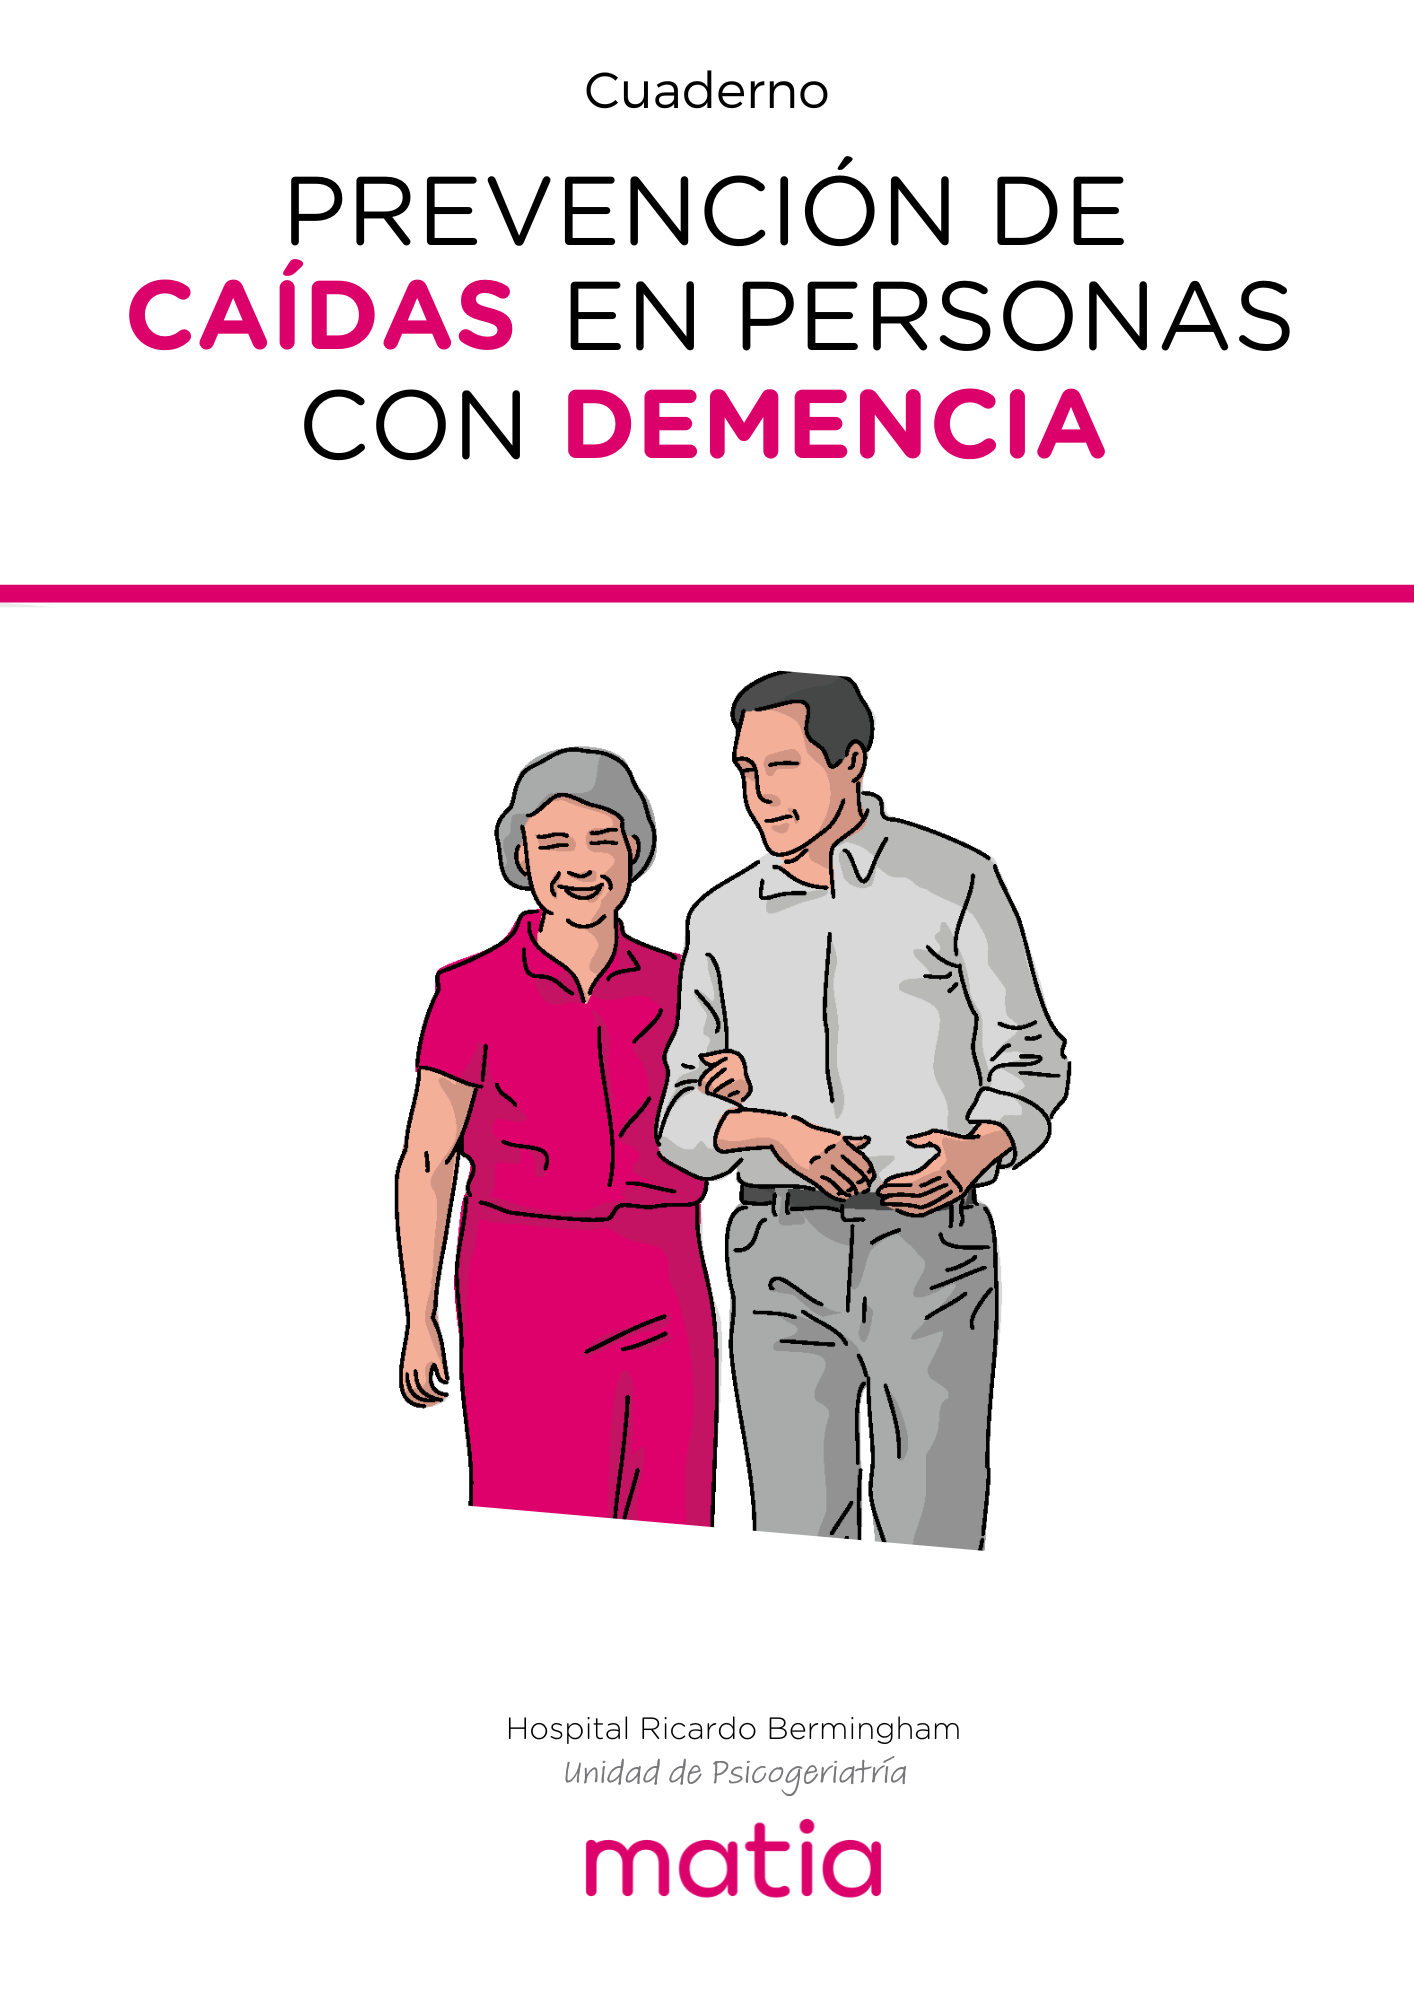 Portada publicación: Cuaderno "Prevención de Caídas en Pacientes con Demencia"